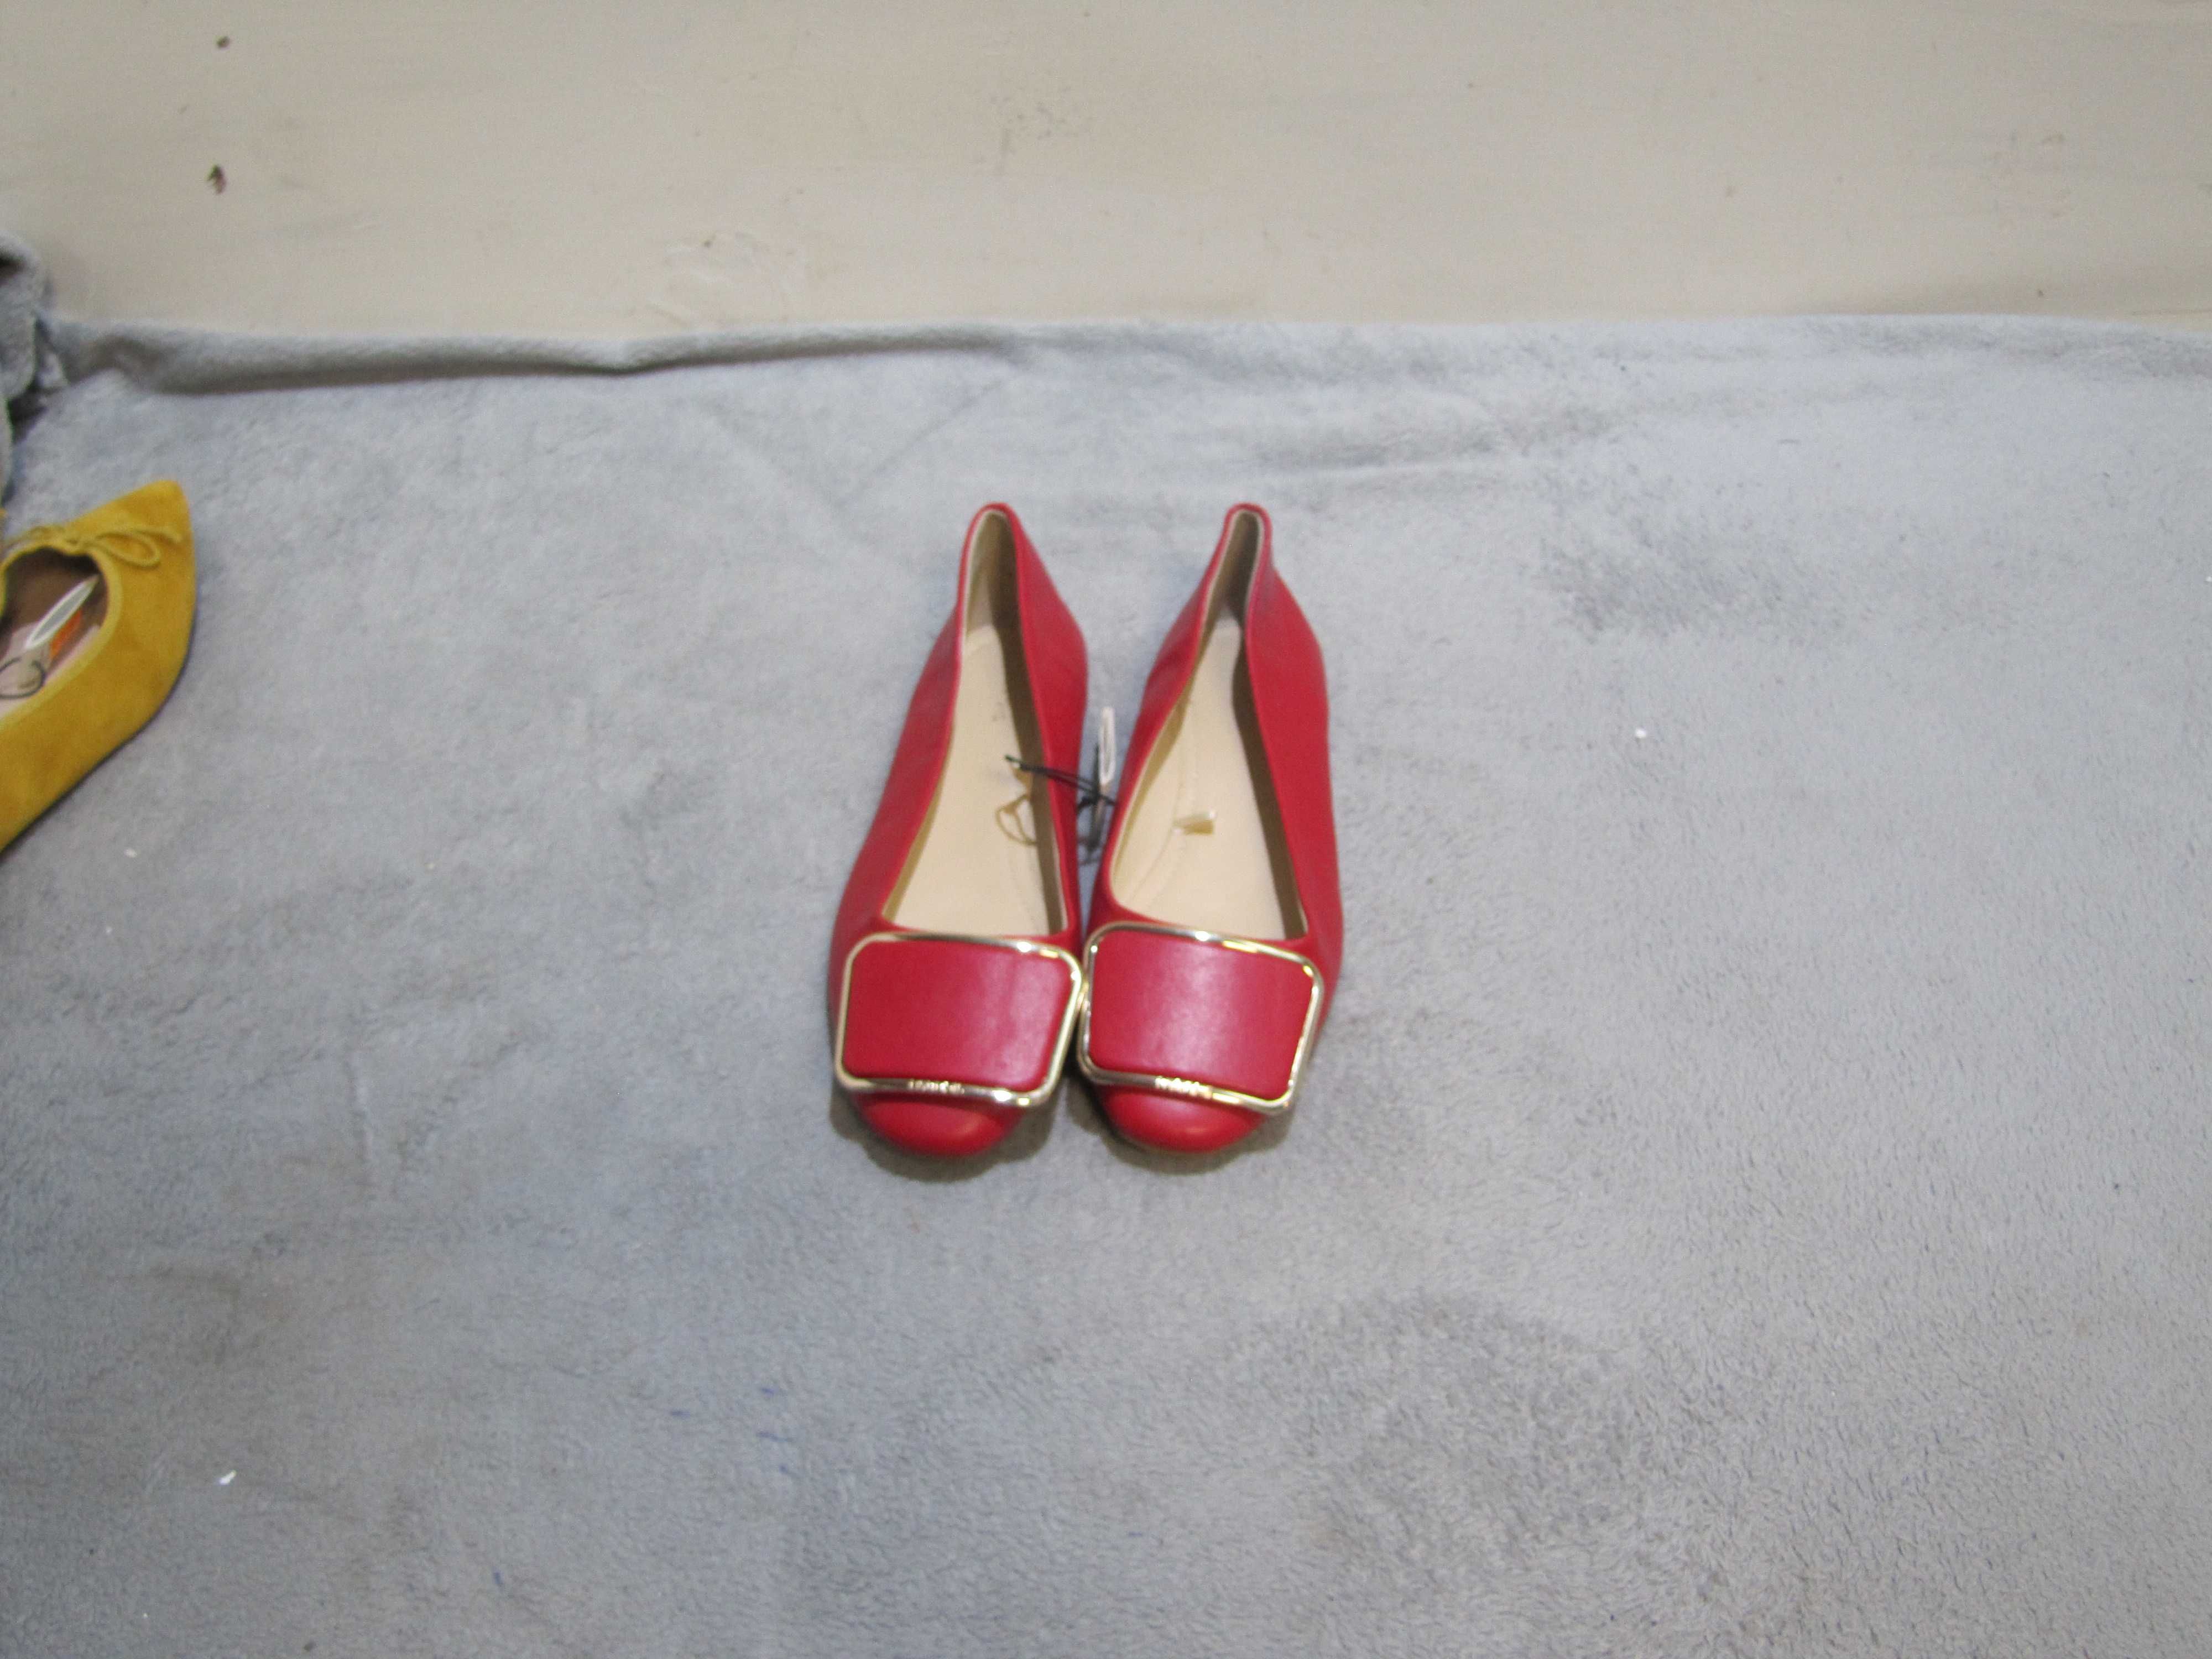 Baleriny buty damskie czerwone płaskie  PARFOIS roz. 36 NOWE